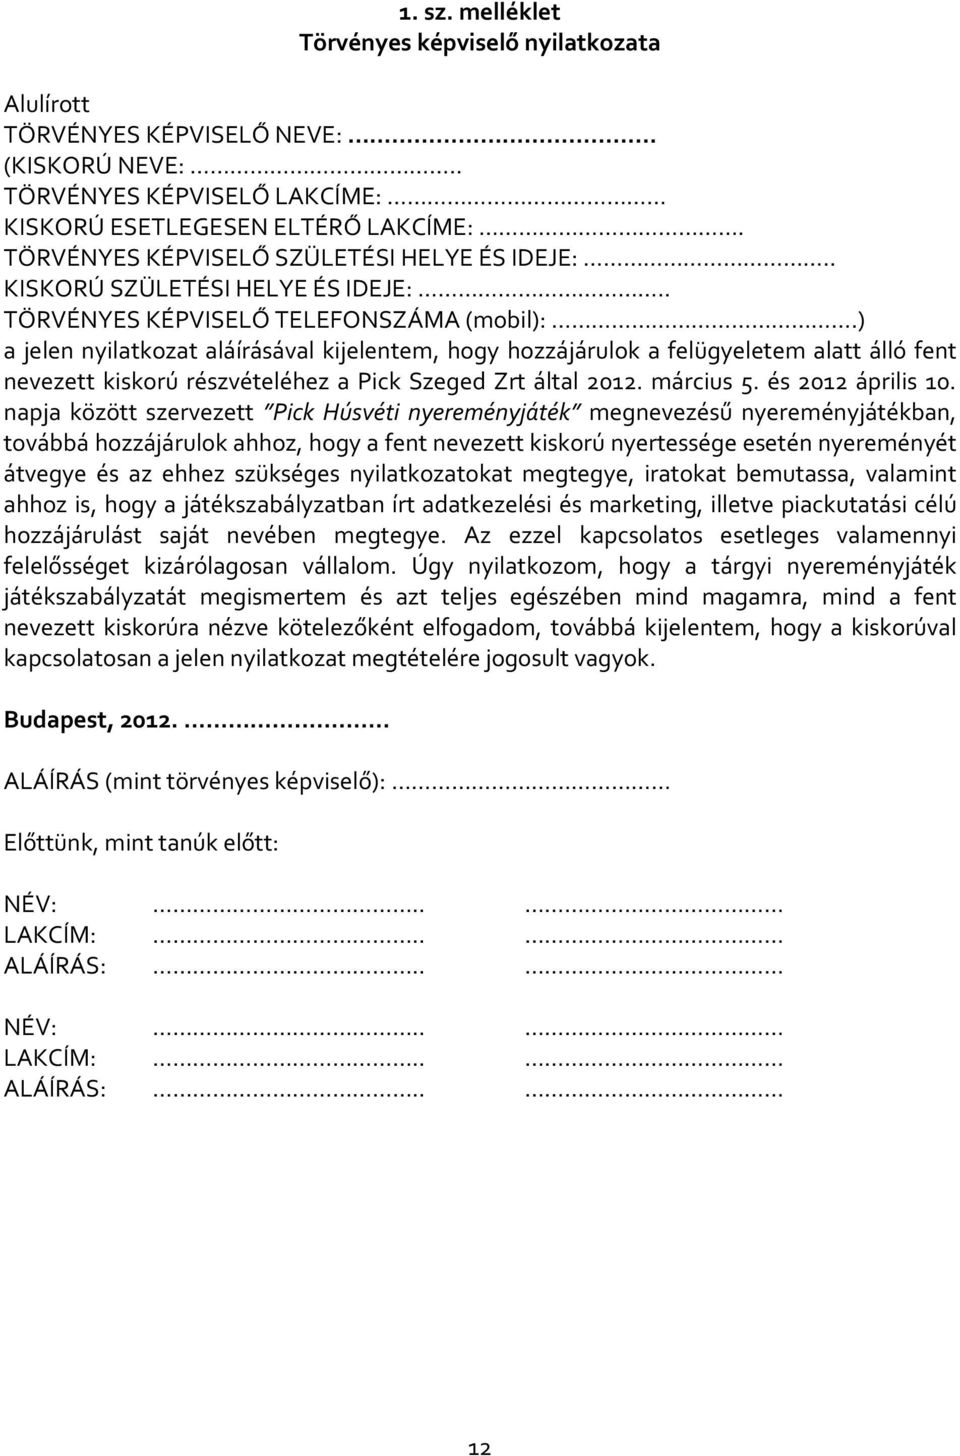 ) a jelen nyilatkozat aláírásával kijelentem, hogy hozzájárulok a felügyeletem alatt álló fent nevezett kiskorú részvételéhez a Pick Szeged Zrt által 2012. március 5. és 2012 április 10.